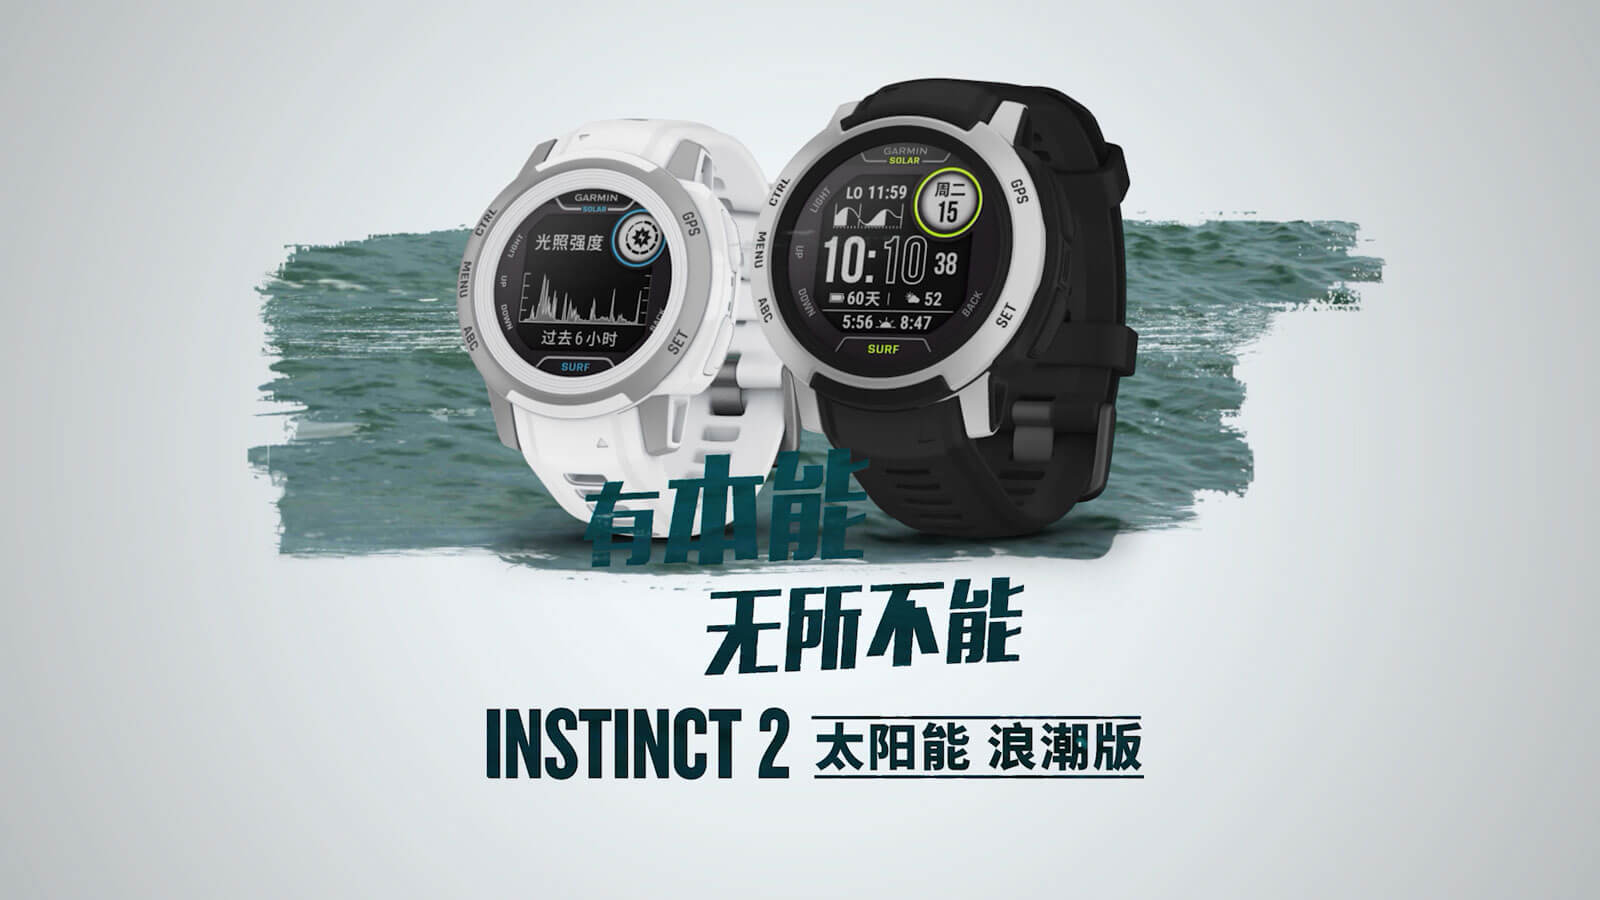 Instinct 2S 浪潮版 - 具备水上活动功能的 GPS 智能手表